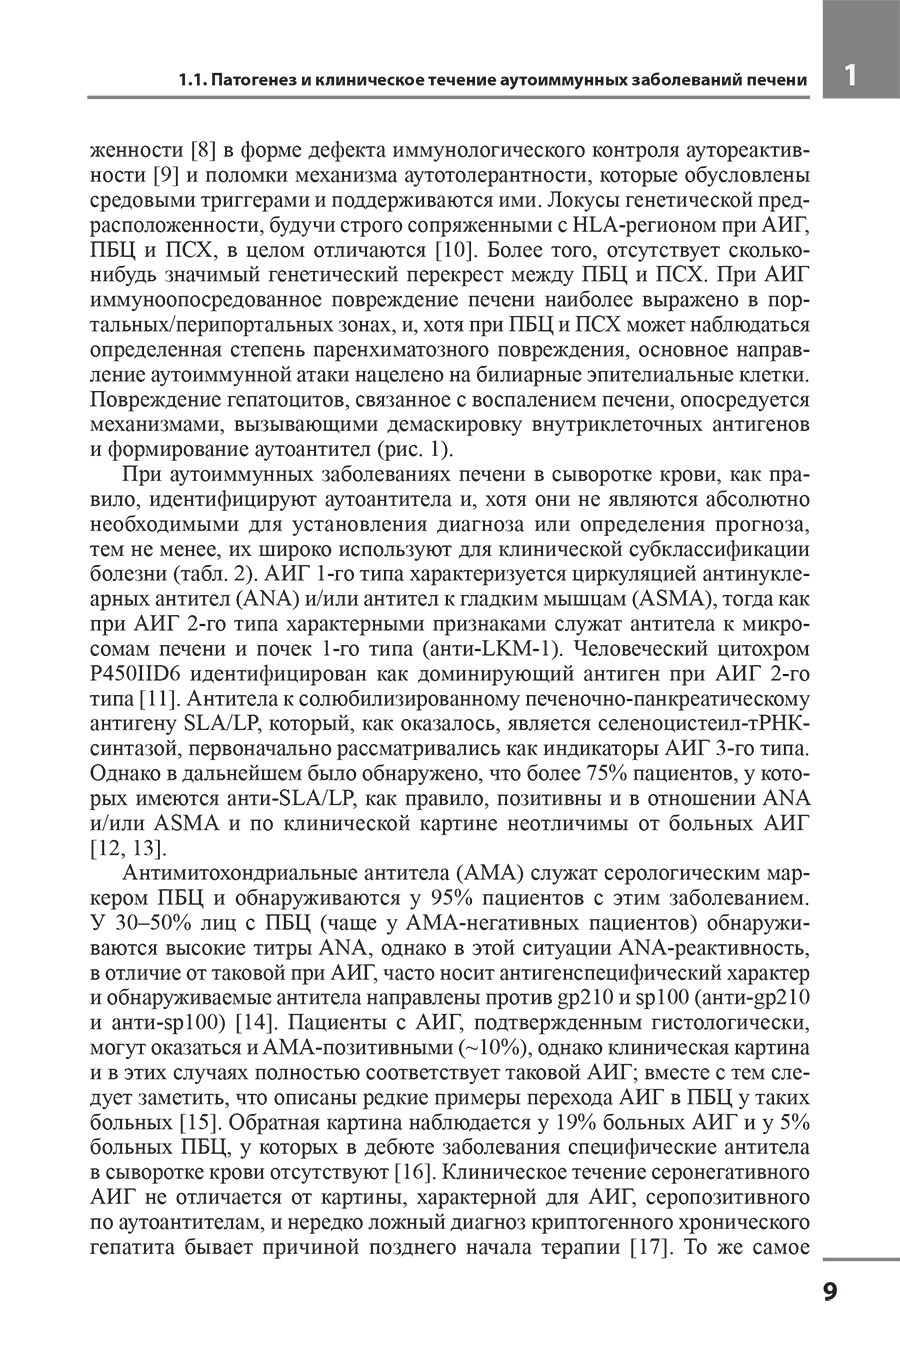 Пример страницы из книги "Аутоиммунные заболевания печени: от патогенеза к прогнозу и лечению" - Ивашкин К. В.